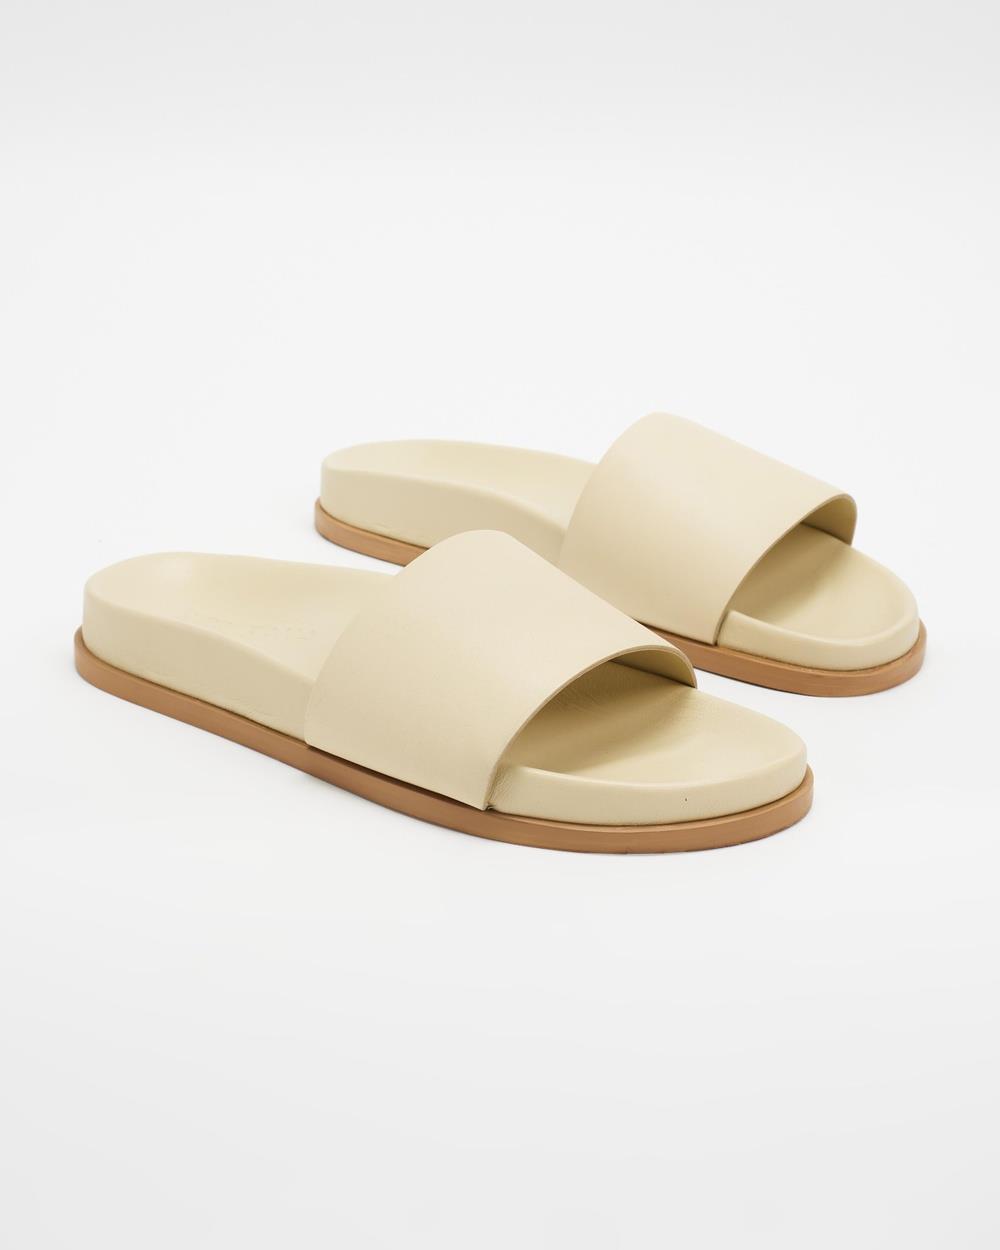 Sol Sana - Oberon Footbed Sandals - Sandals (Parchment) Oberon Footbed Sandals